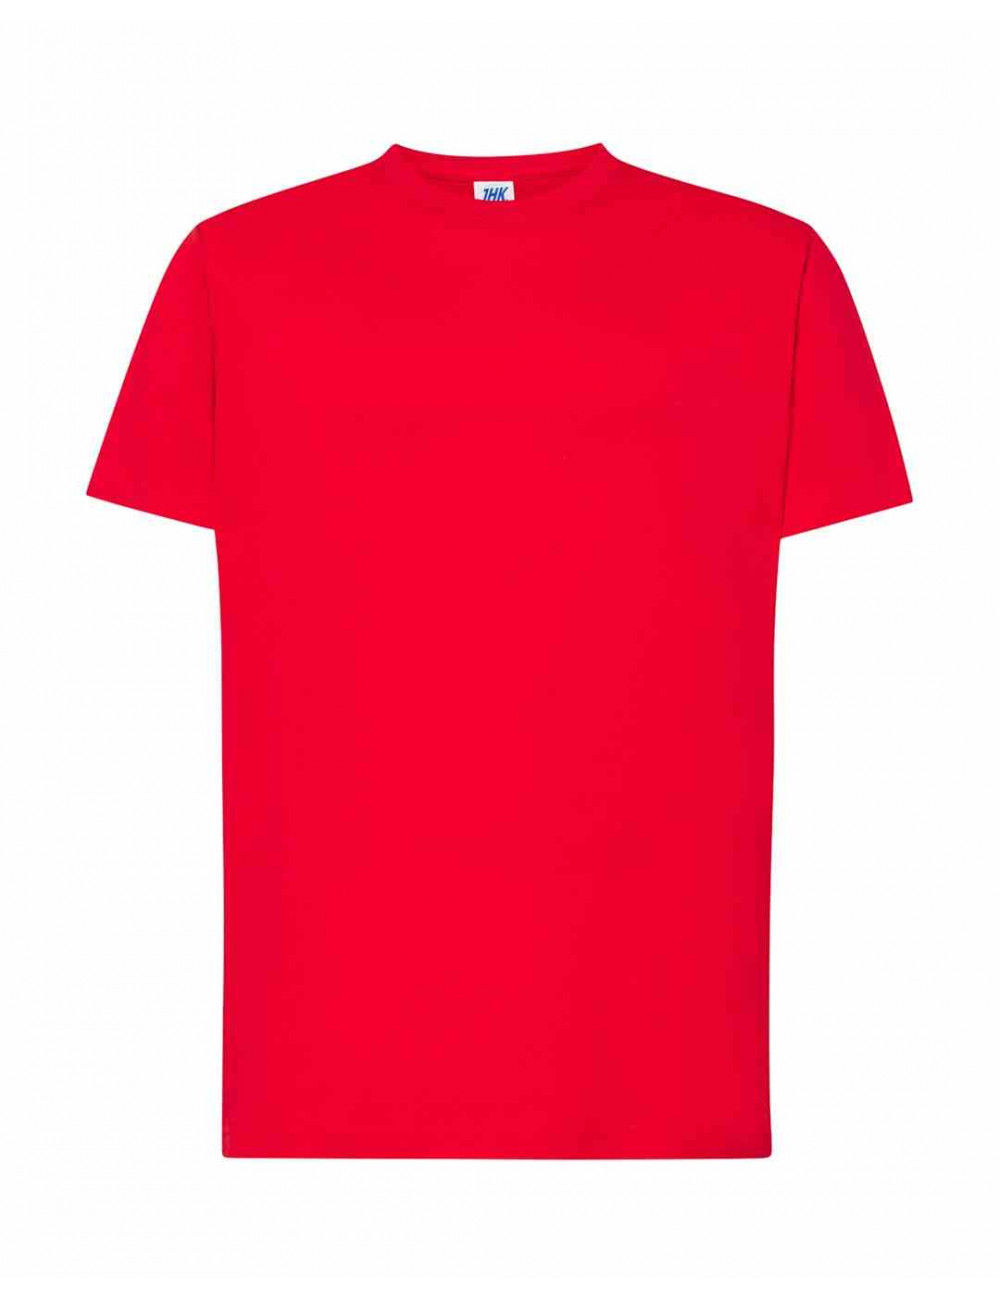 Koszulka męska tsra 150 regular t-shirt rd - red Jhk